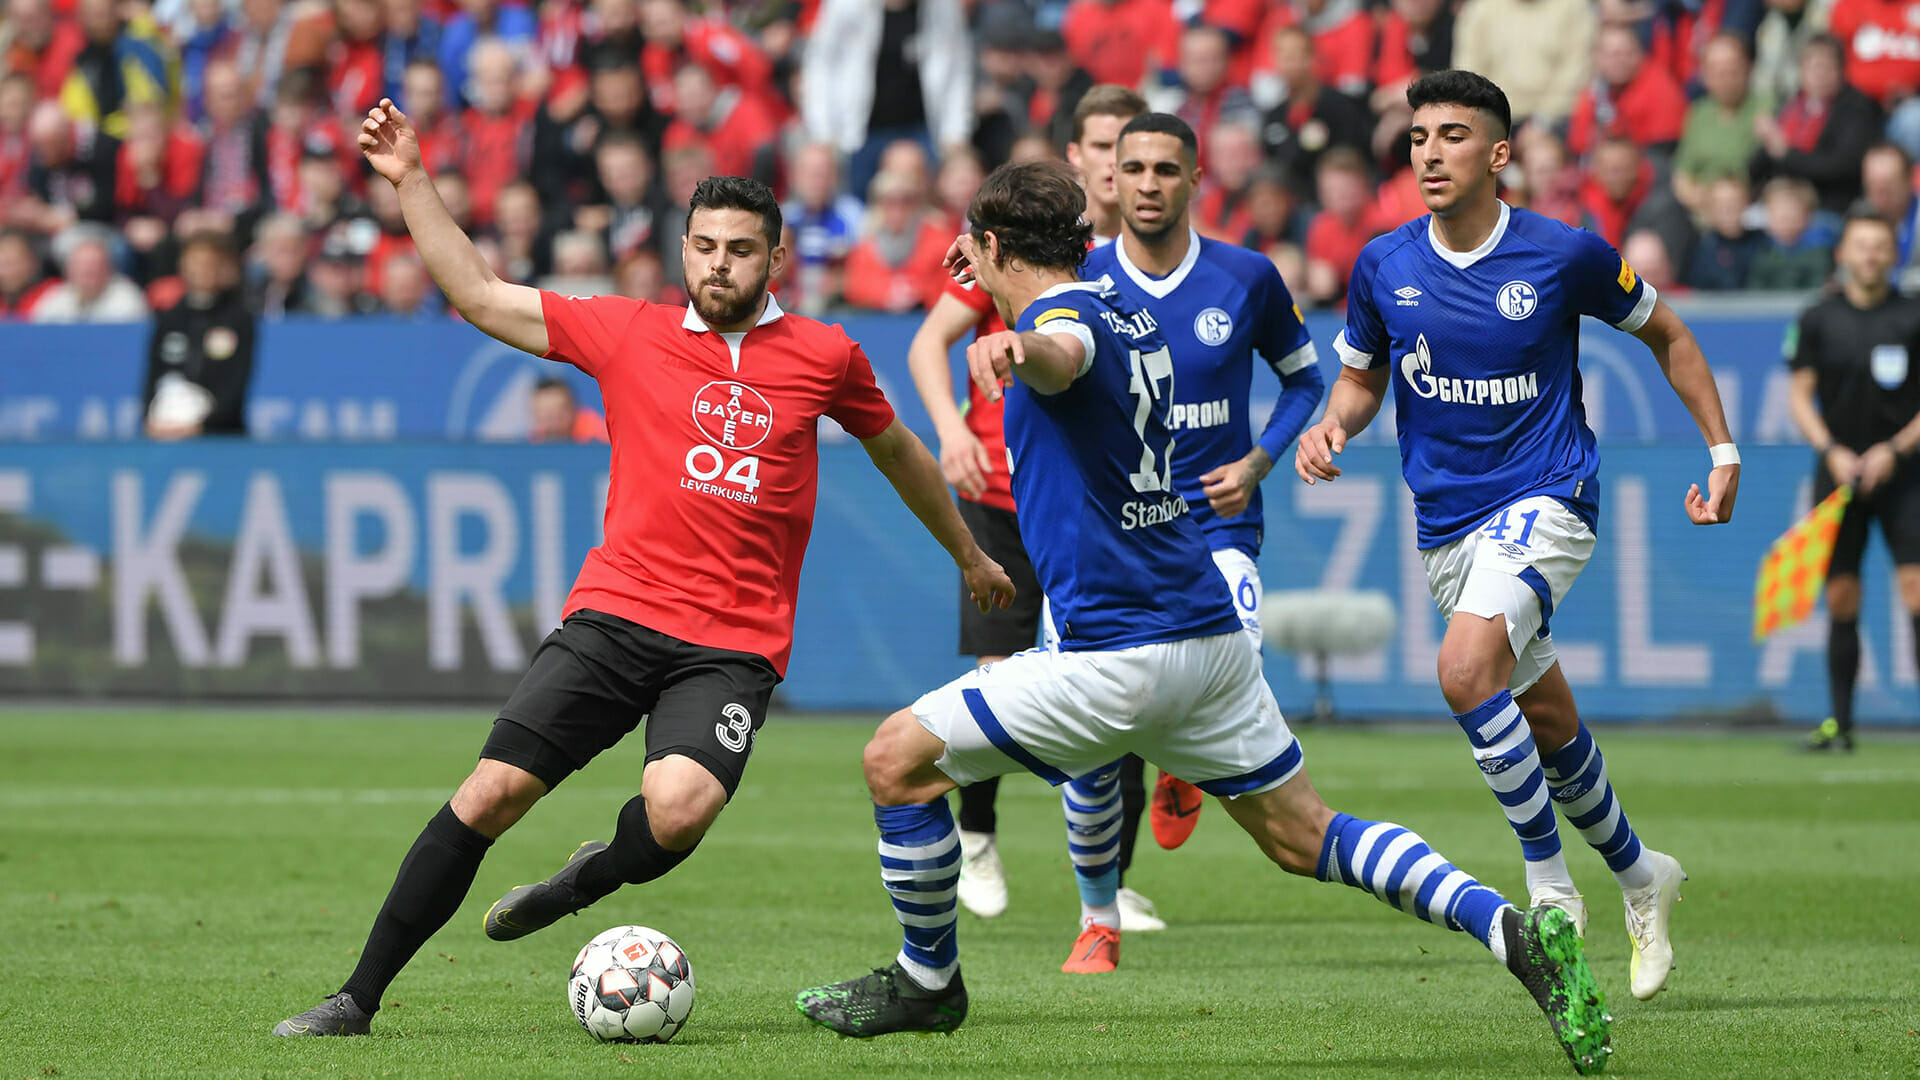 11 05 2019 Fussball GER Saison 2018 2019 1 Bundesliga 33 Spieltag Bayer 04 Leverkusen FC S